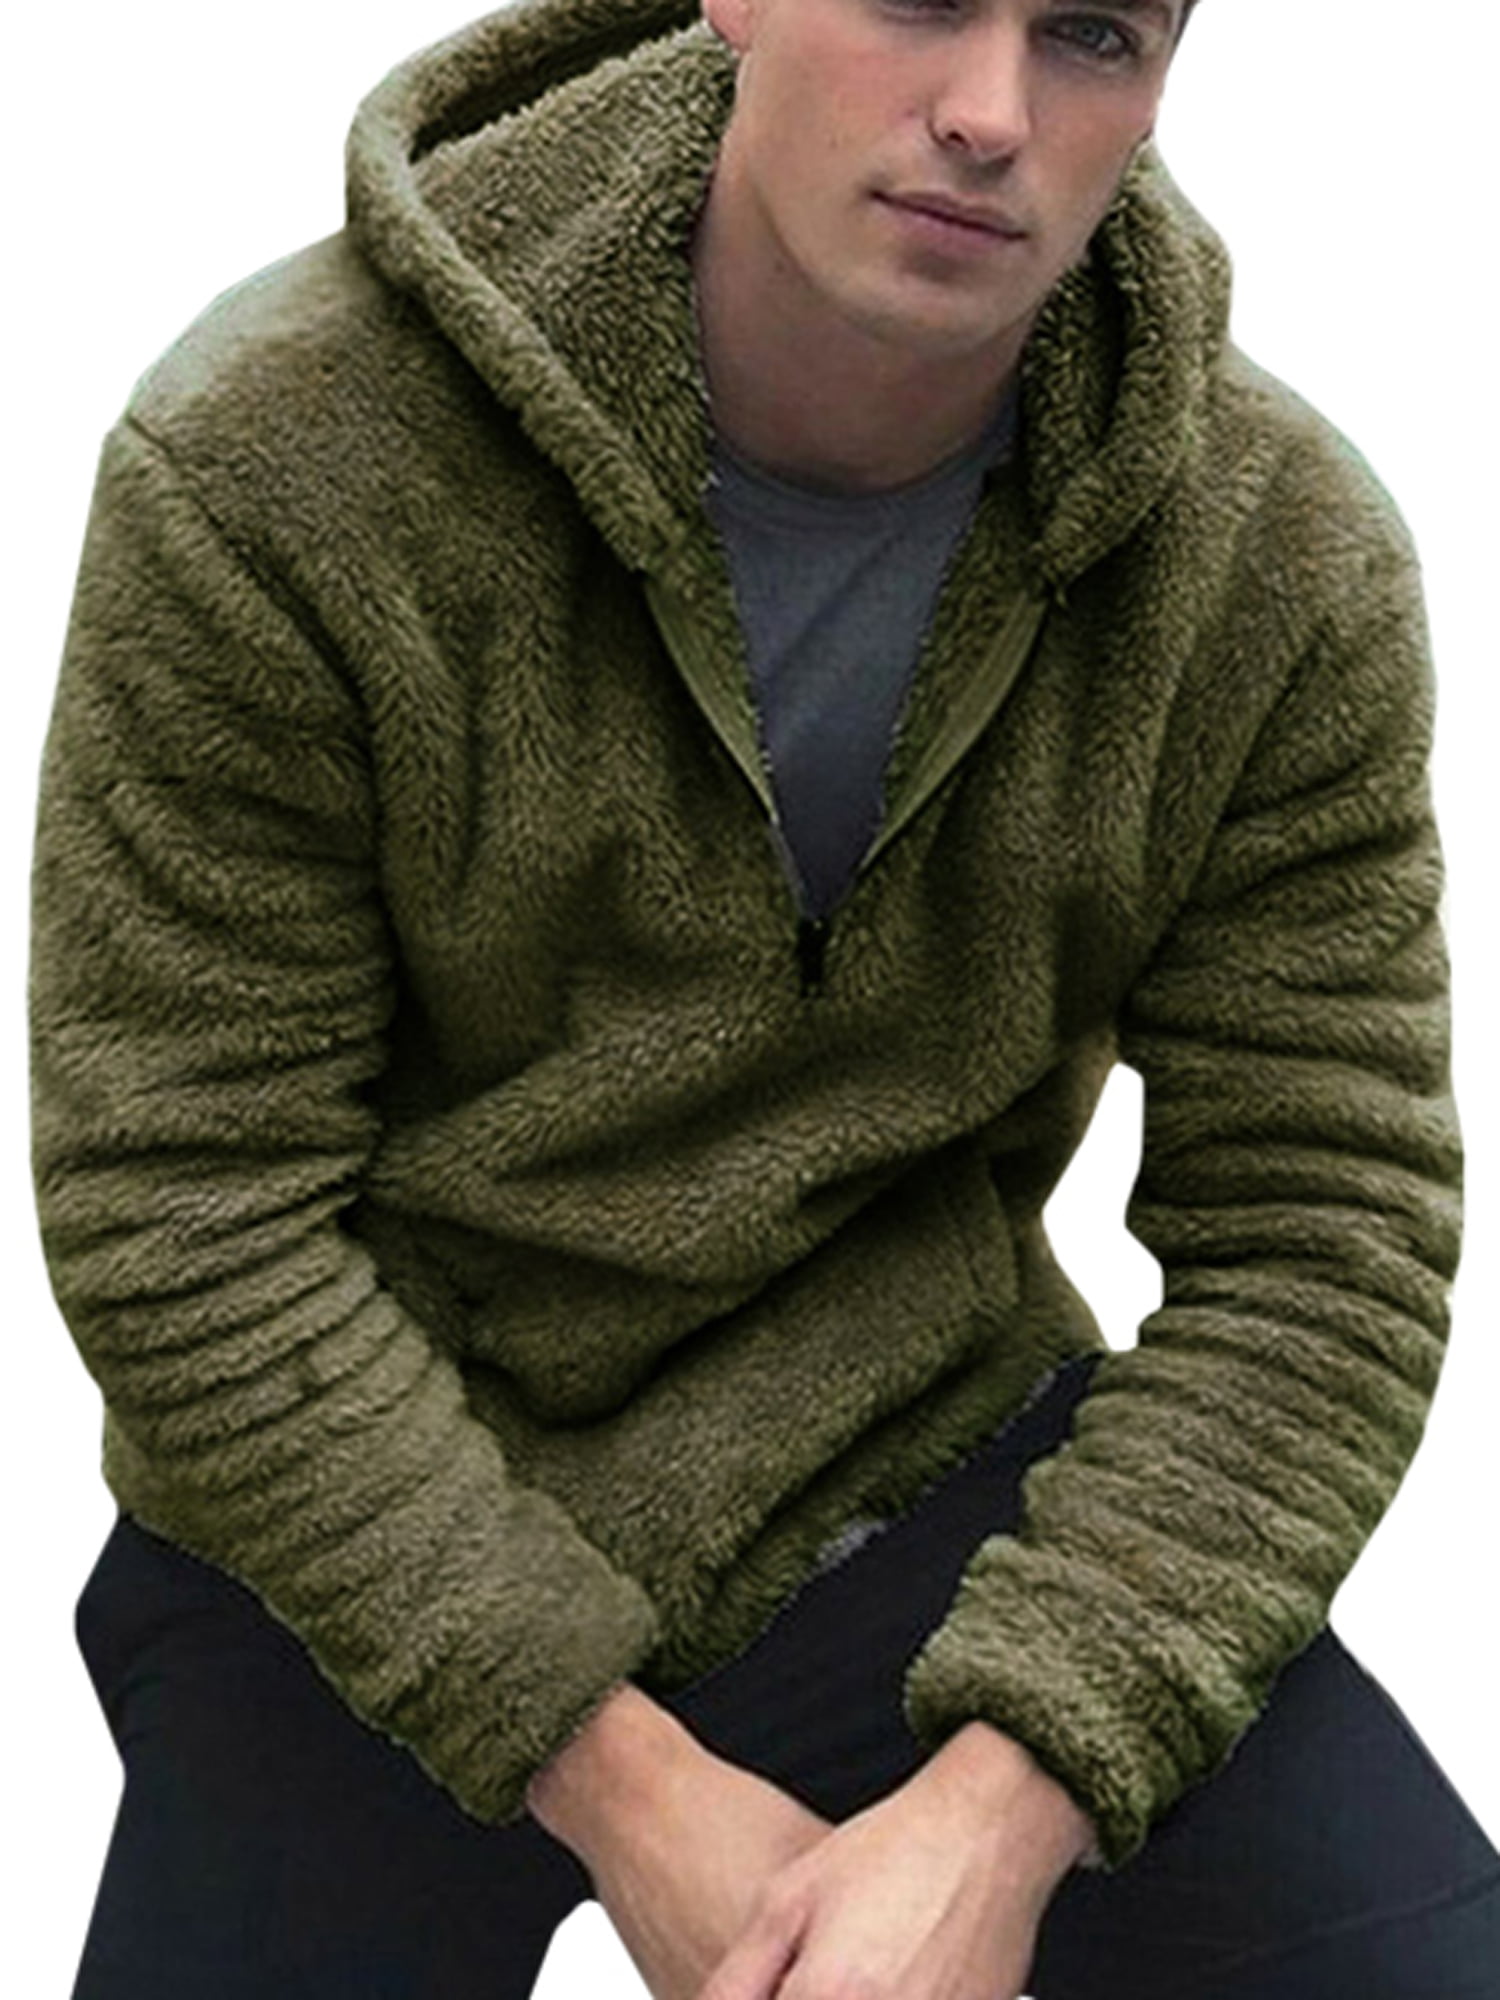 Men's Fluffy Hooded Jumper Teddy Fleece Hoodie Plush Sweatshirt Lightweight Pullover with Pocket Warm Winter Outwear